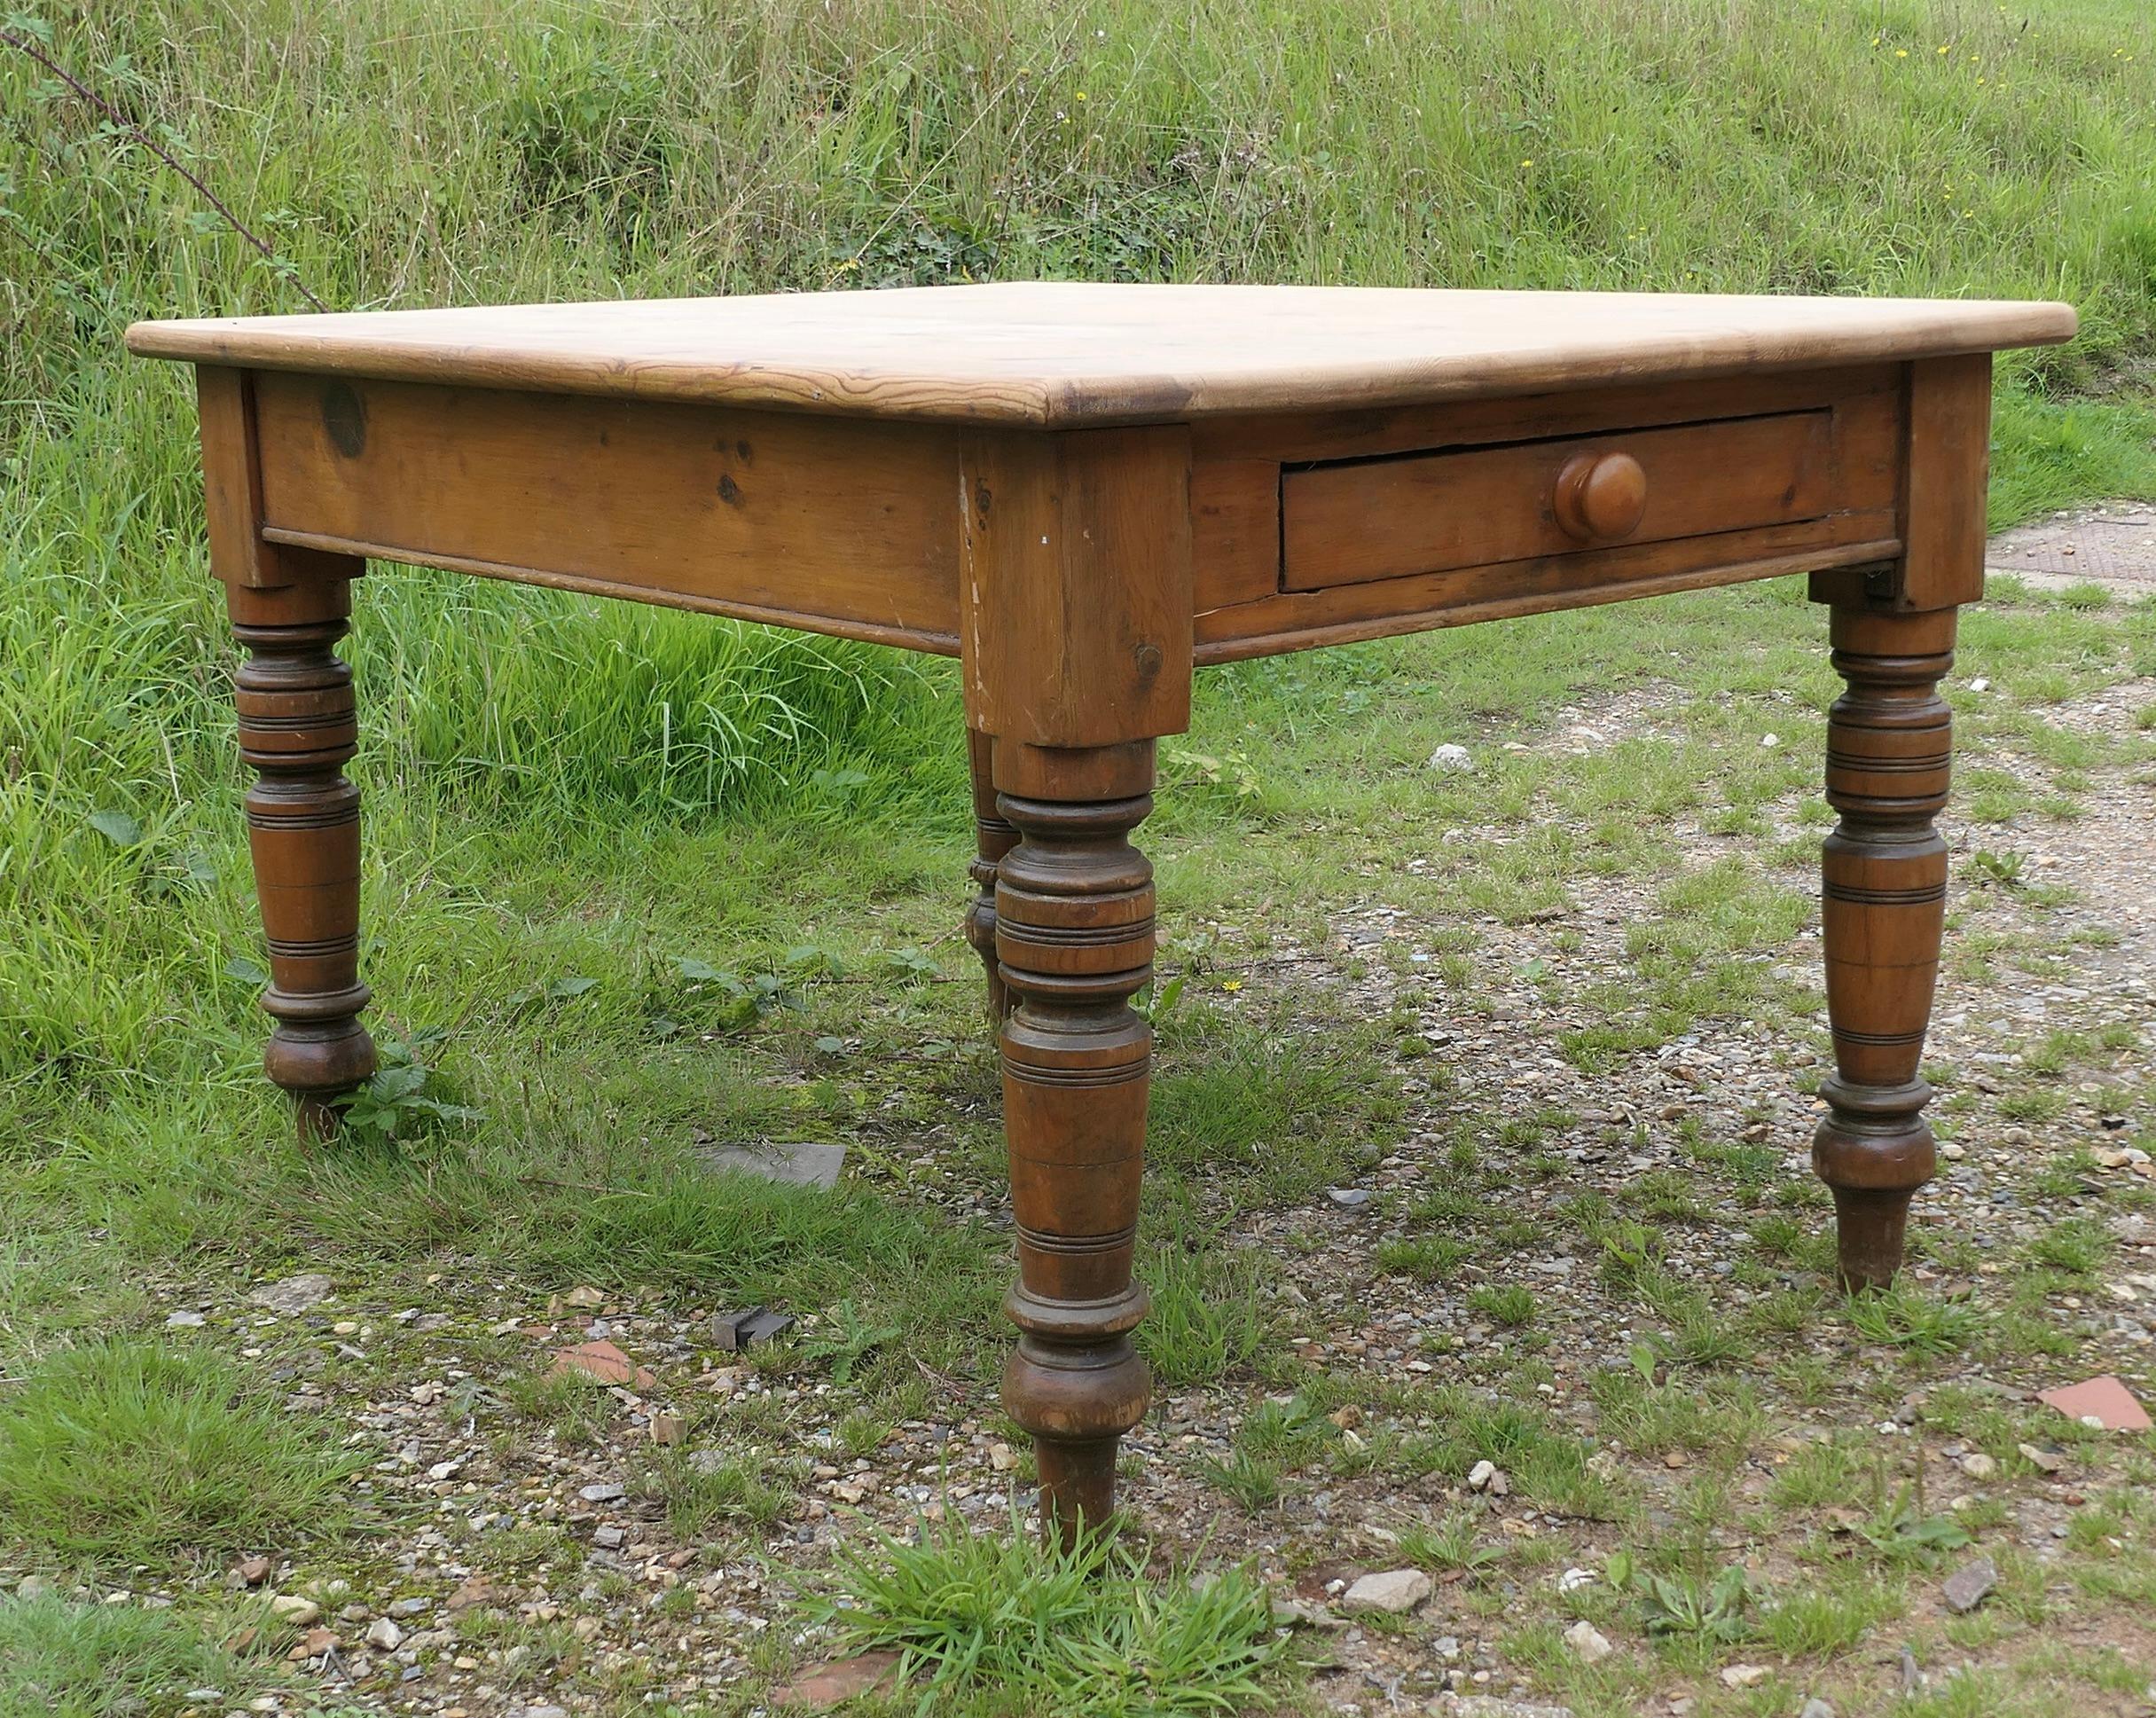 6-Sitzer Bauernhoftisch aus Kiefer  

Dies ist eine gute Rustic Farmhouse Tisch, es hat eine alte schrubben oben und die klobigen Beine sind gedreht, der Tisch hat einen zusätzlichen Vorteil der mit einer Schublade an jedem Ende 
Der Tisch ist zwar